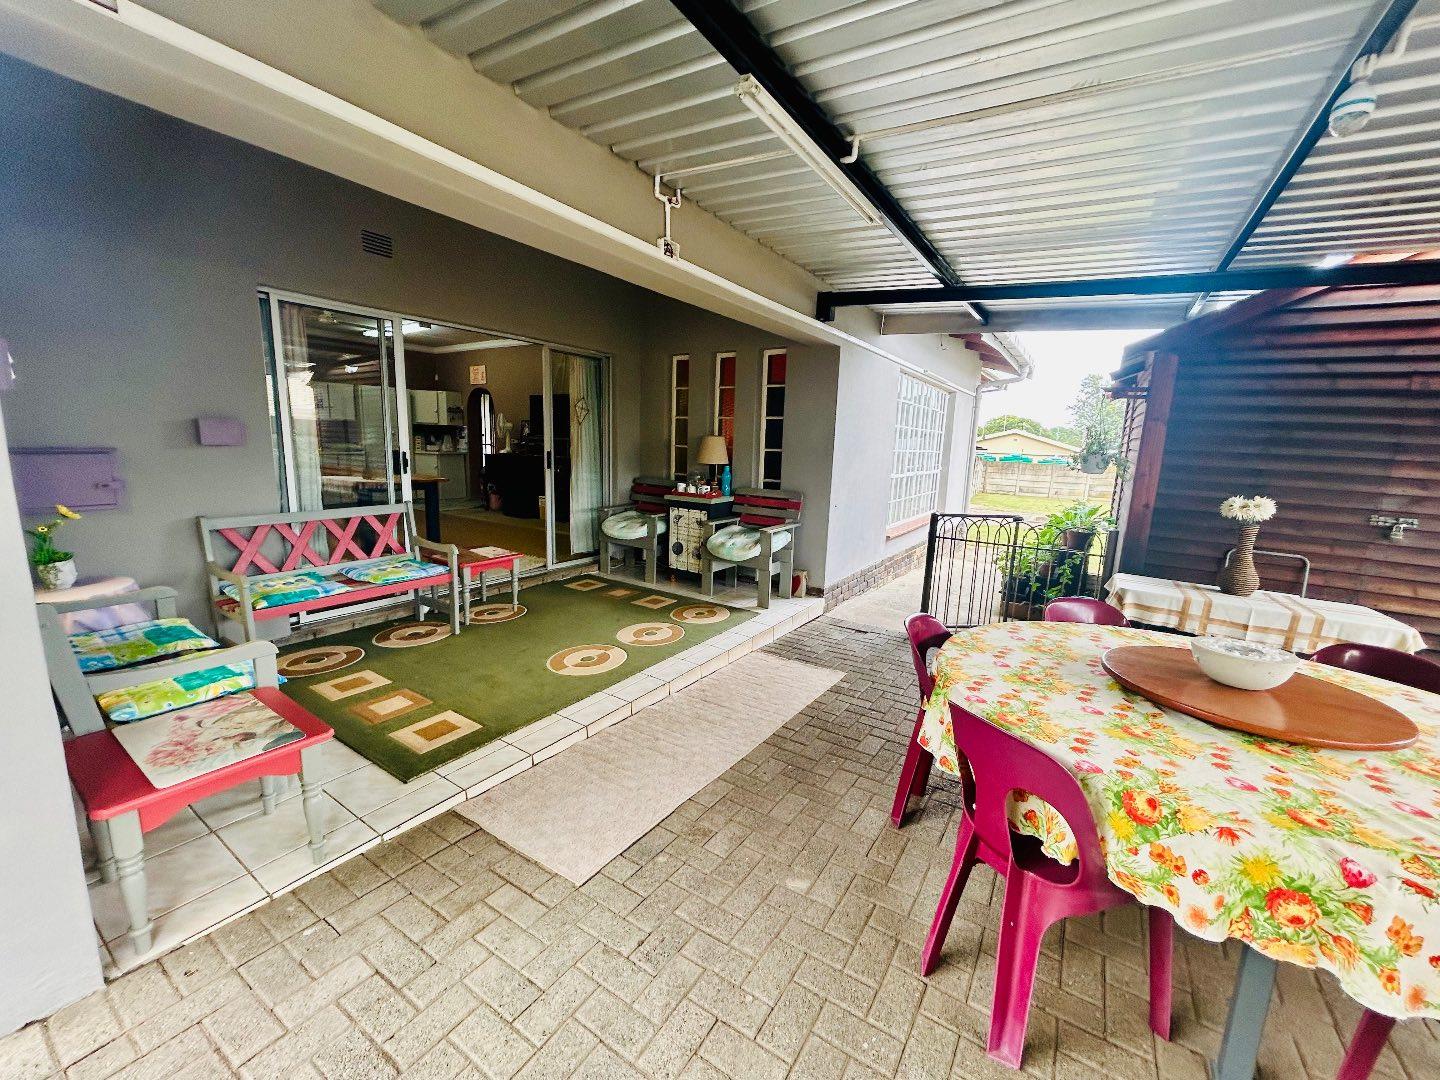 4 Bedroom Property for Sale in Vryheid KwaZulu-Natal